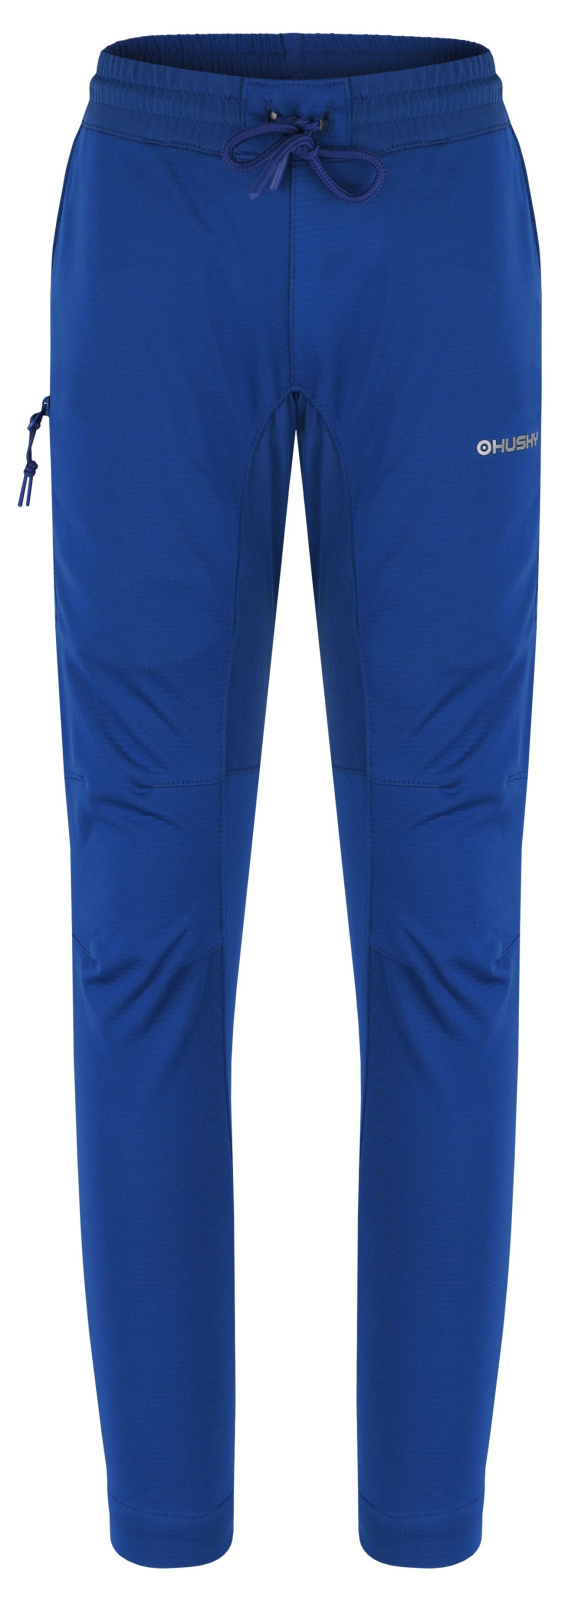 Husky Dětské softshell kalhoty Klassum K blue Velikost: 134 dětské kalhoty